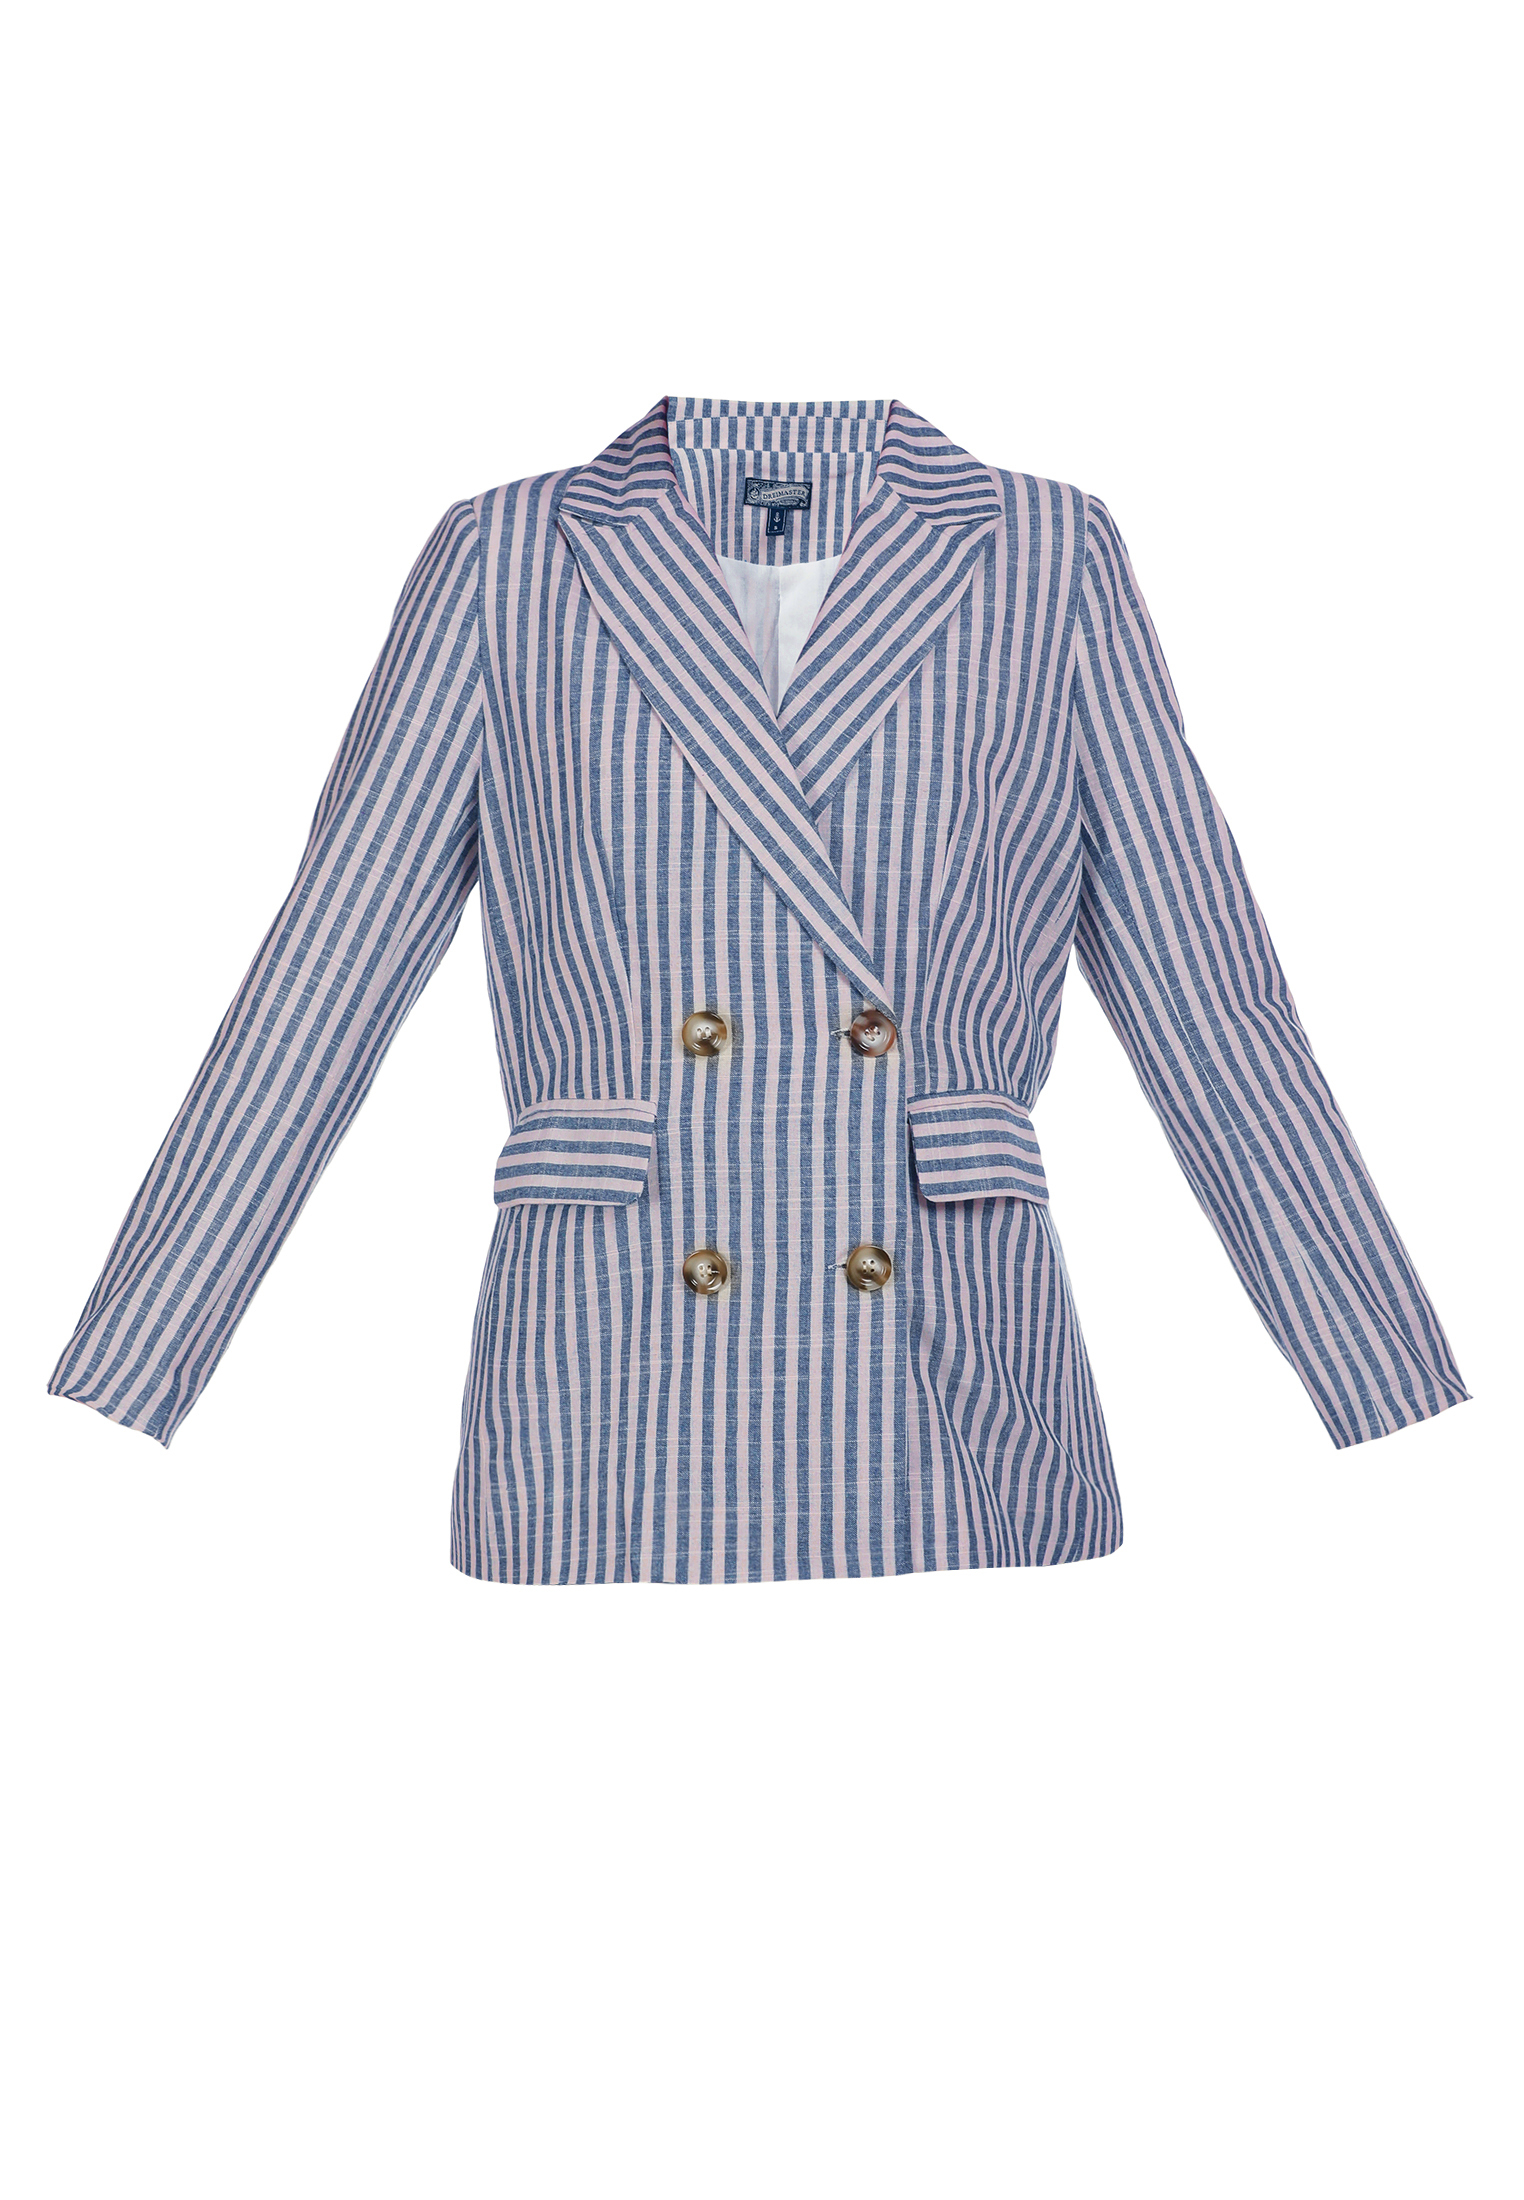 Occasioni Donna DreiMaster Vintage Blazer in Blu Reale 